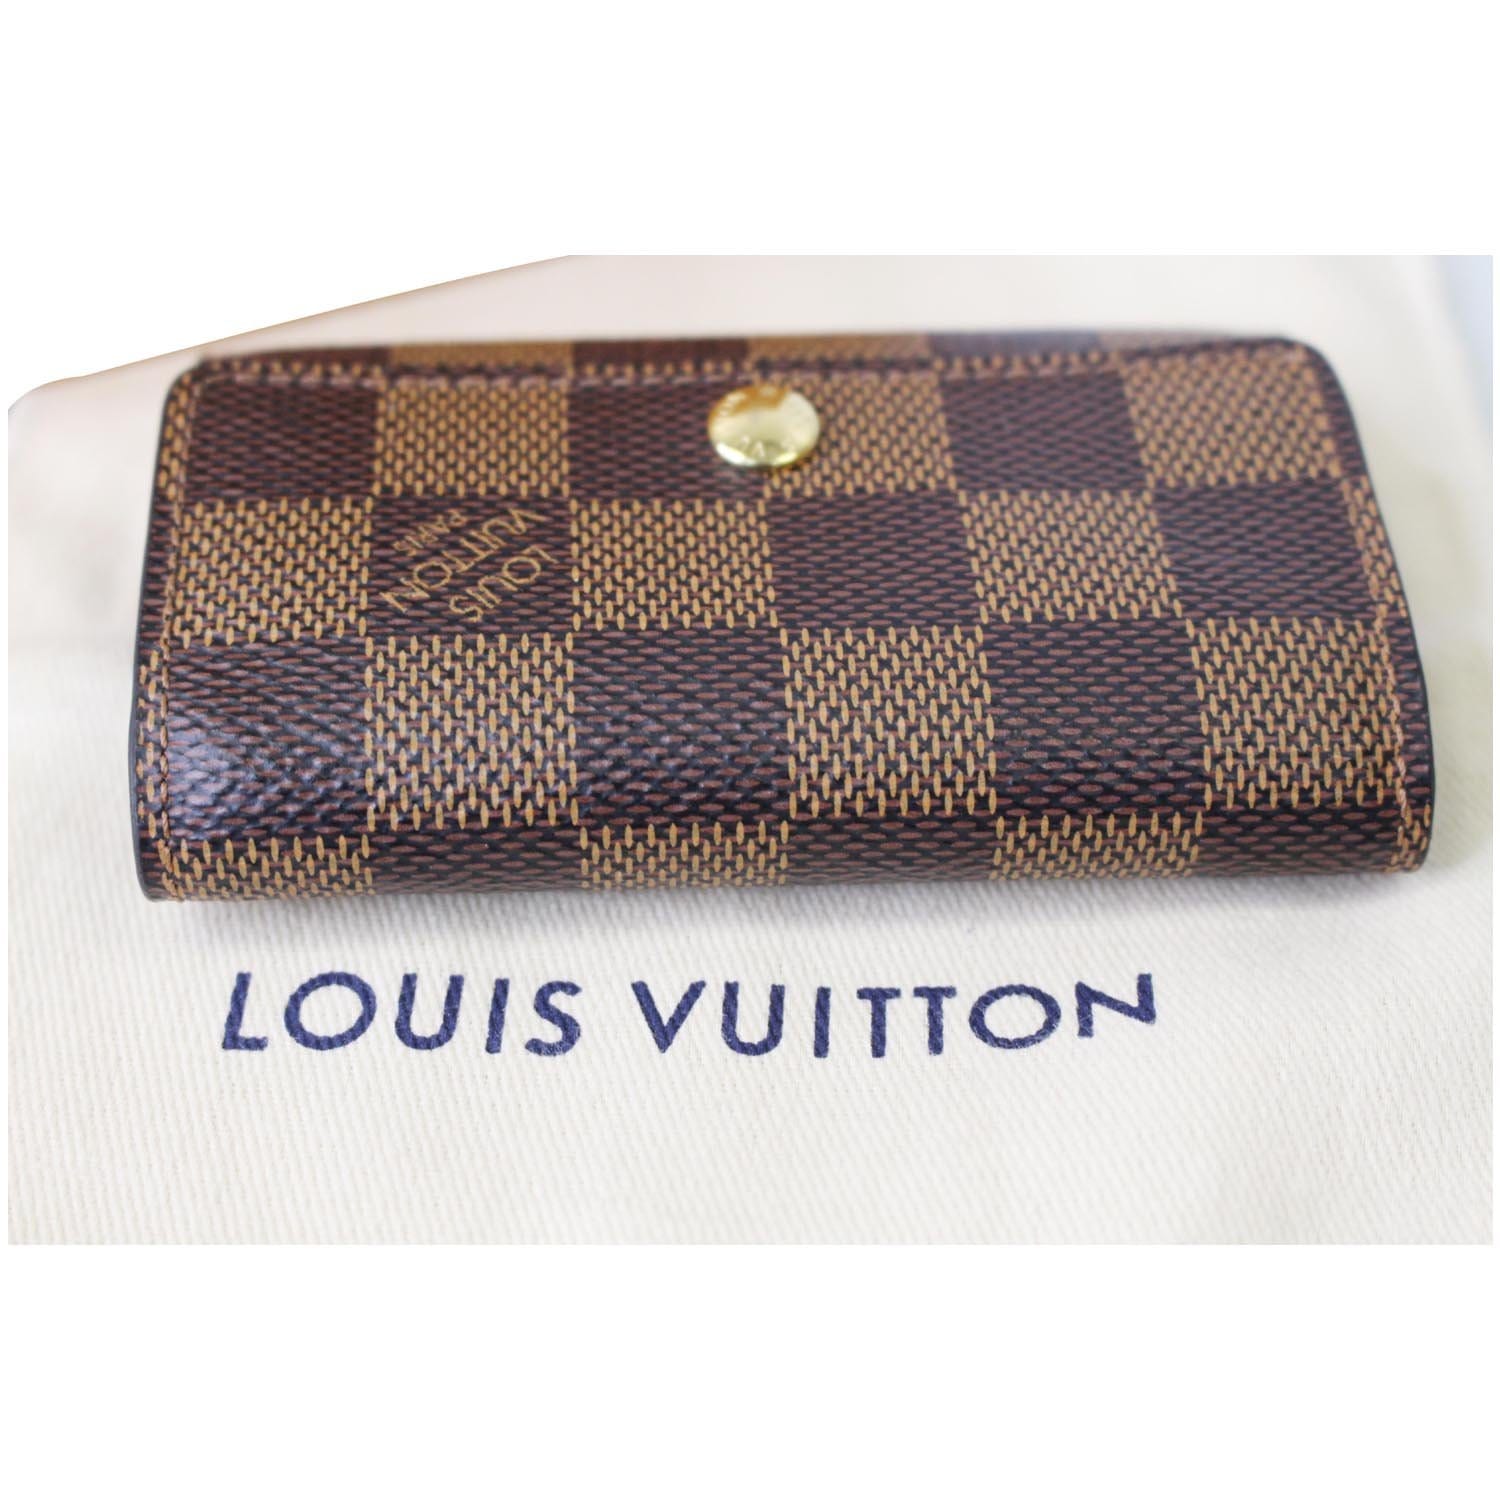 Louis Vuitton 6 key holder. AUTHENTIC